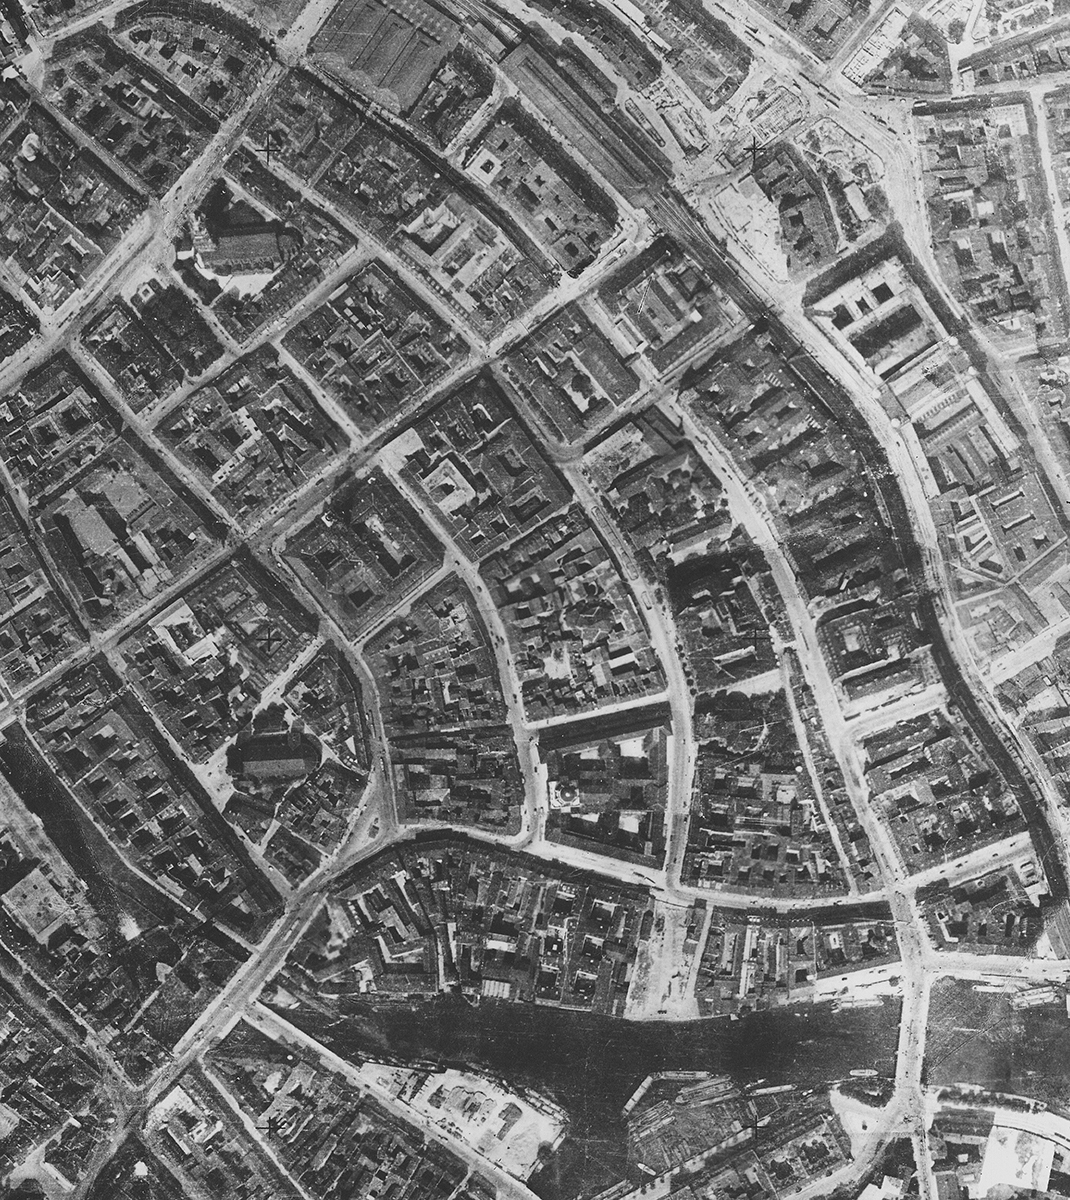 Luftbild vom Molkenmarkt (1928)